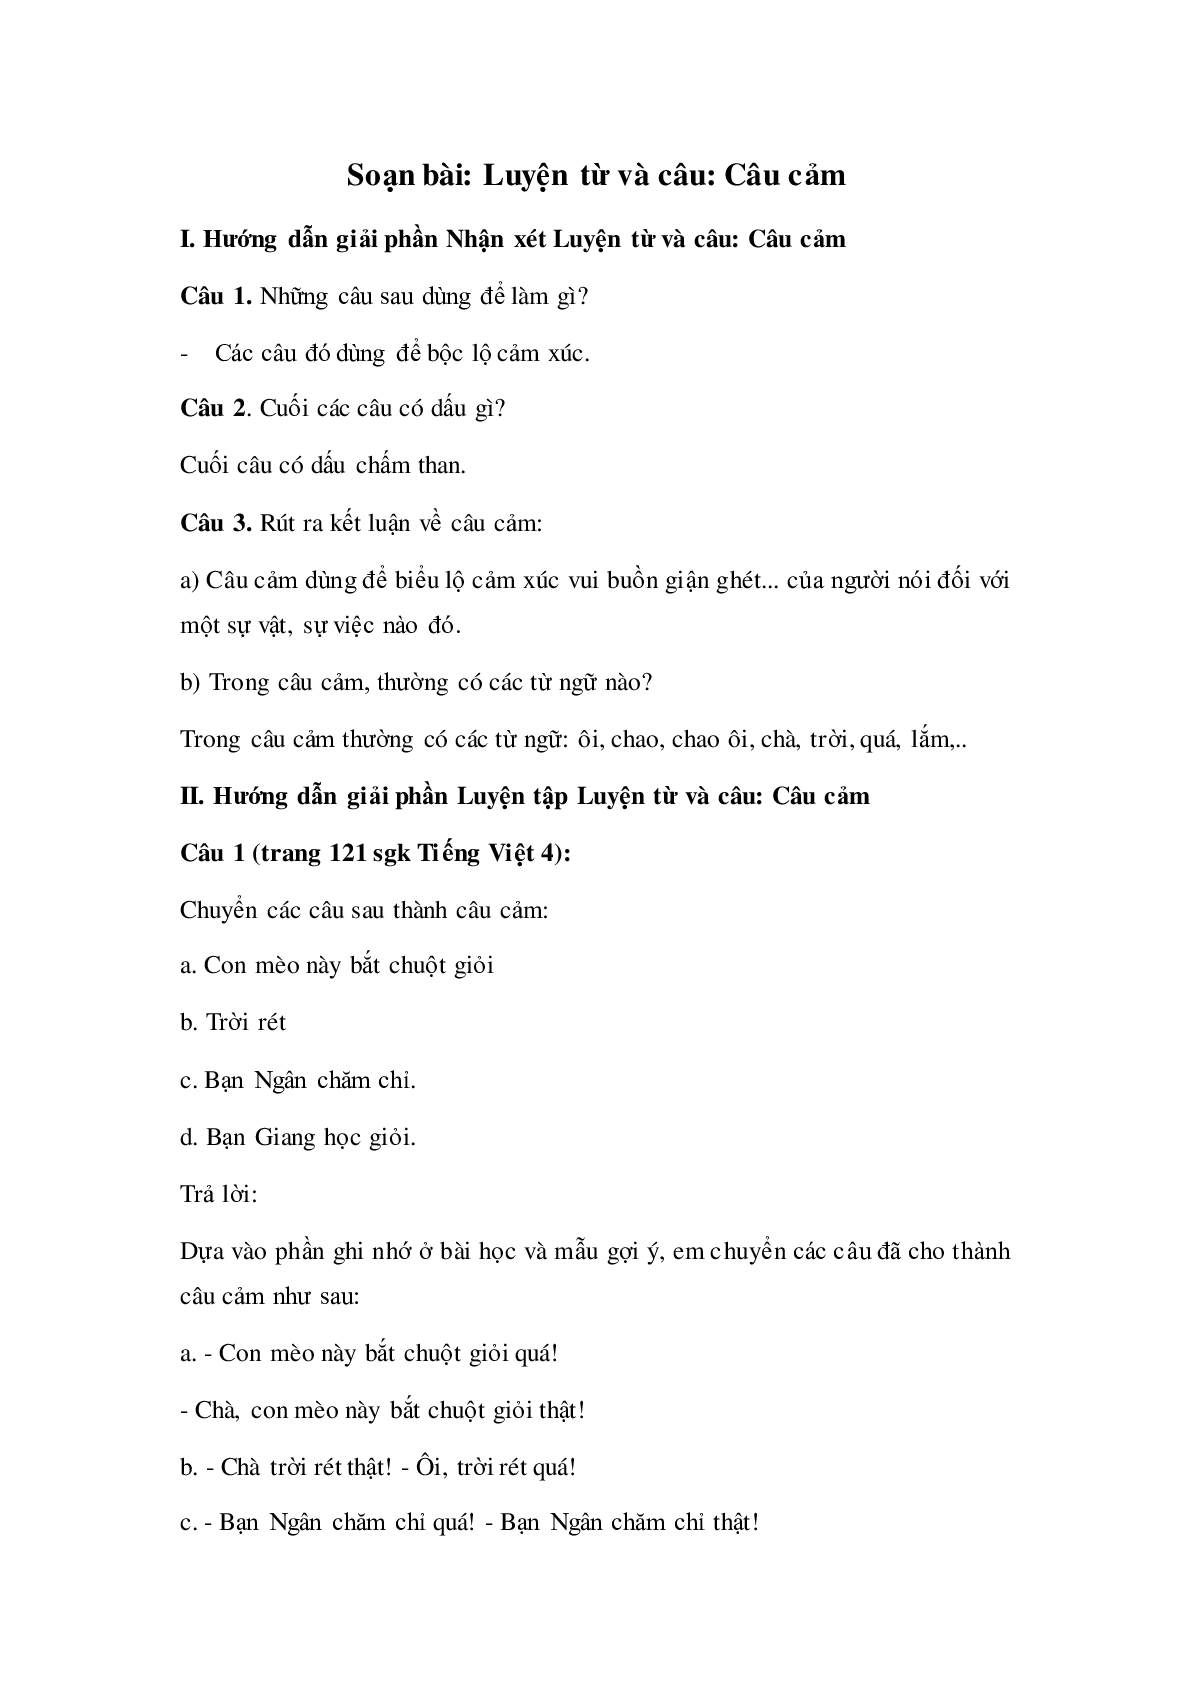 Soạn Tiếng Việt lớp 4: Luyện từ và câu: Câu cảm mới nhất (trang 1)